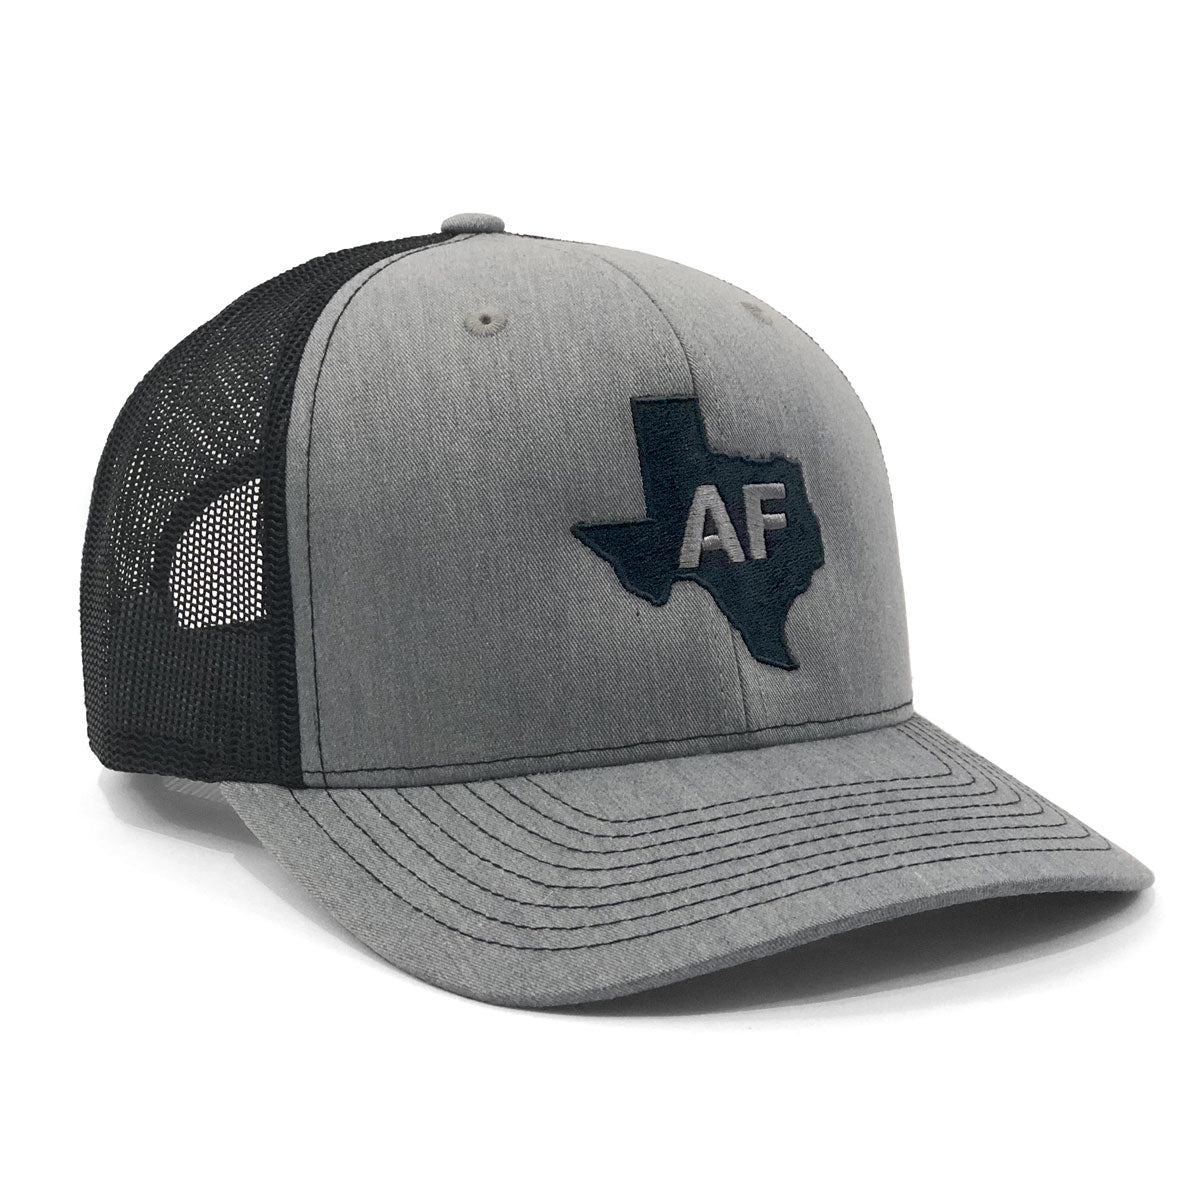 Texas AF Cap